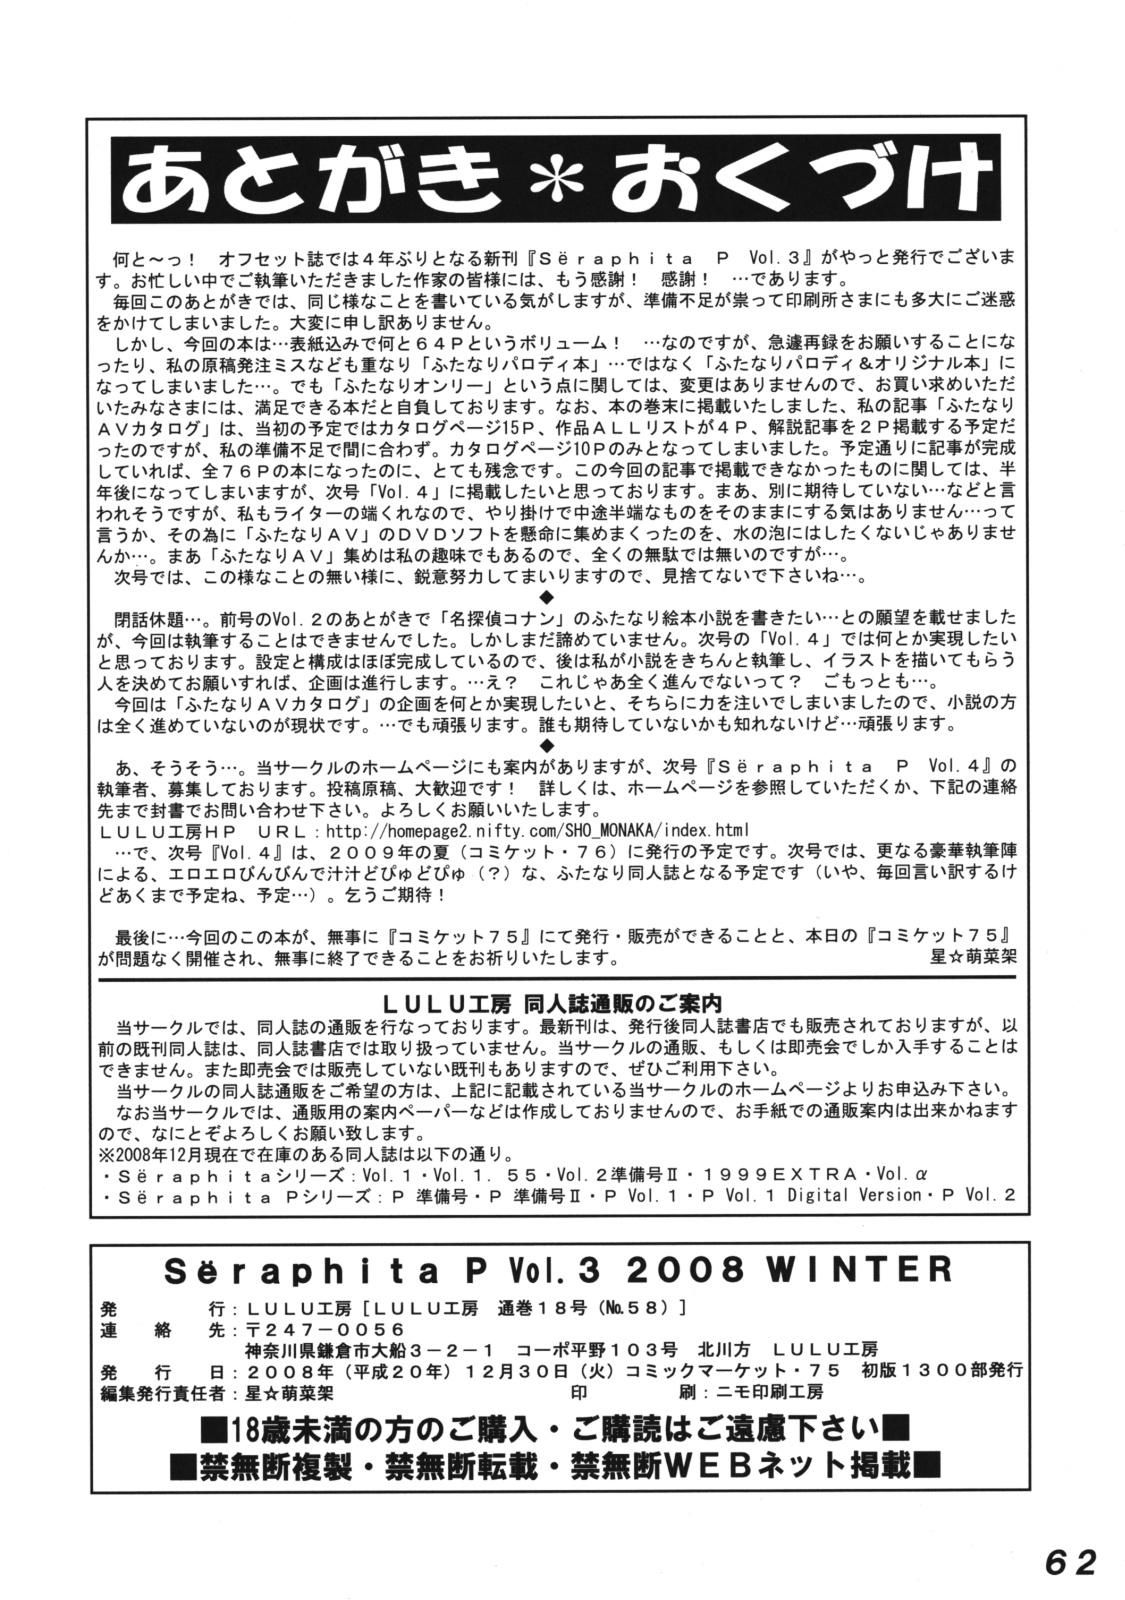 Seraphita P Vol.3 2008 Winter 60